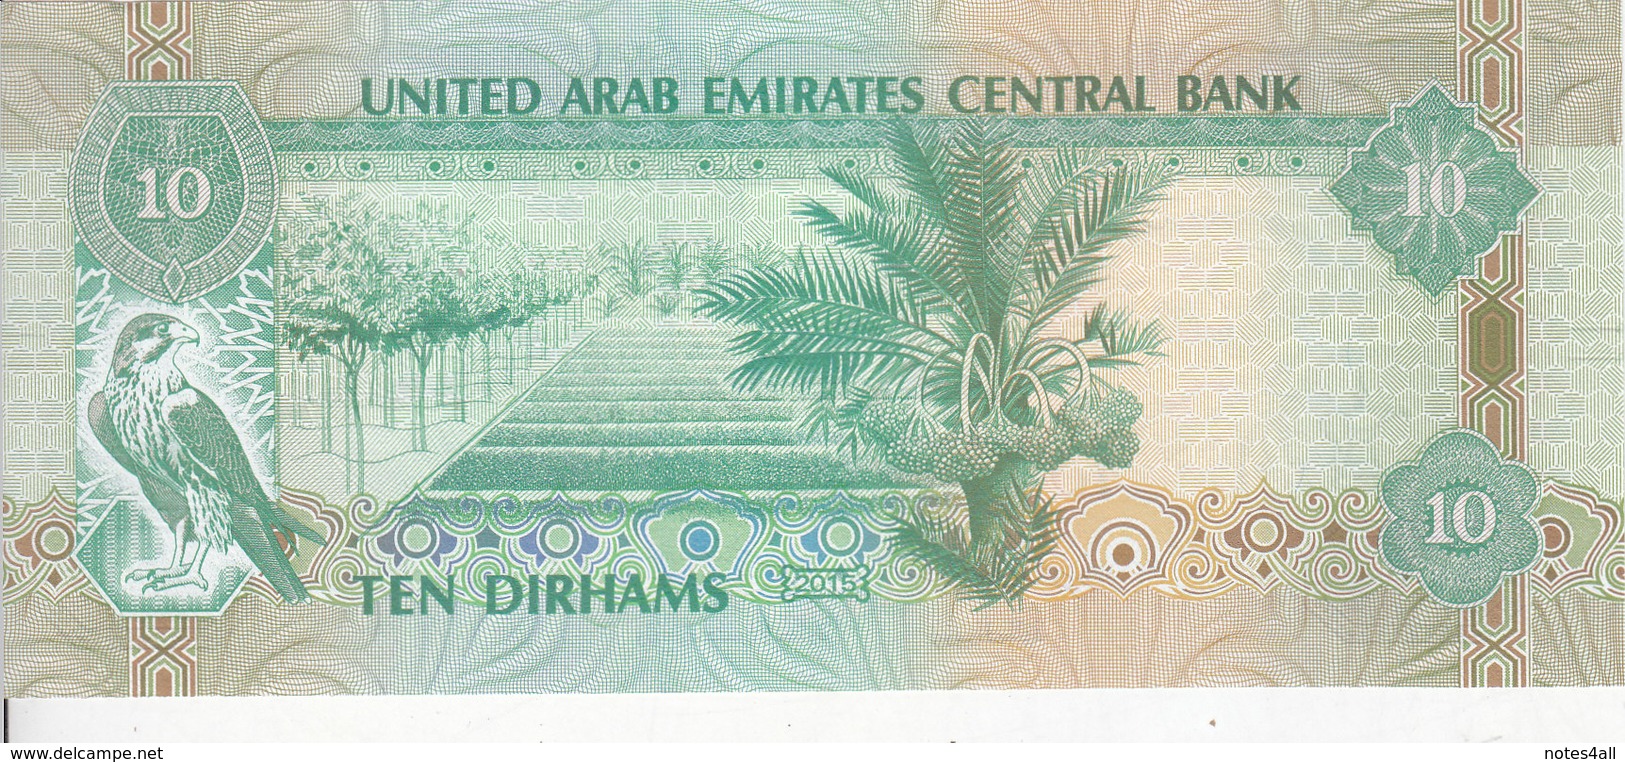 UAE UNITED ARAB EMIRATES 10 DIRHAMS 2015 P-27 UNC */* - Ver. Arab. Emirate